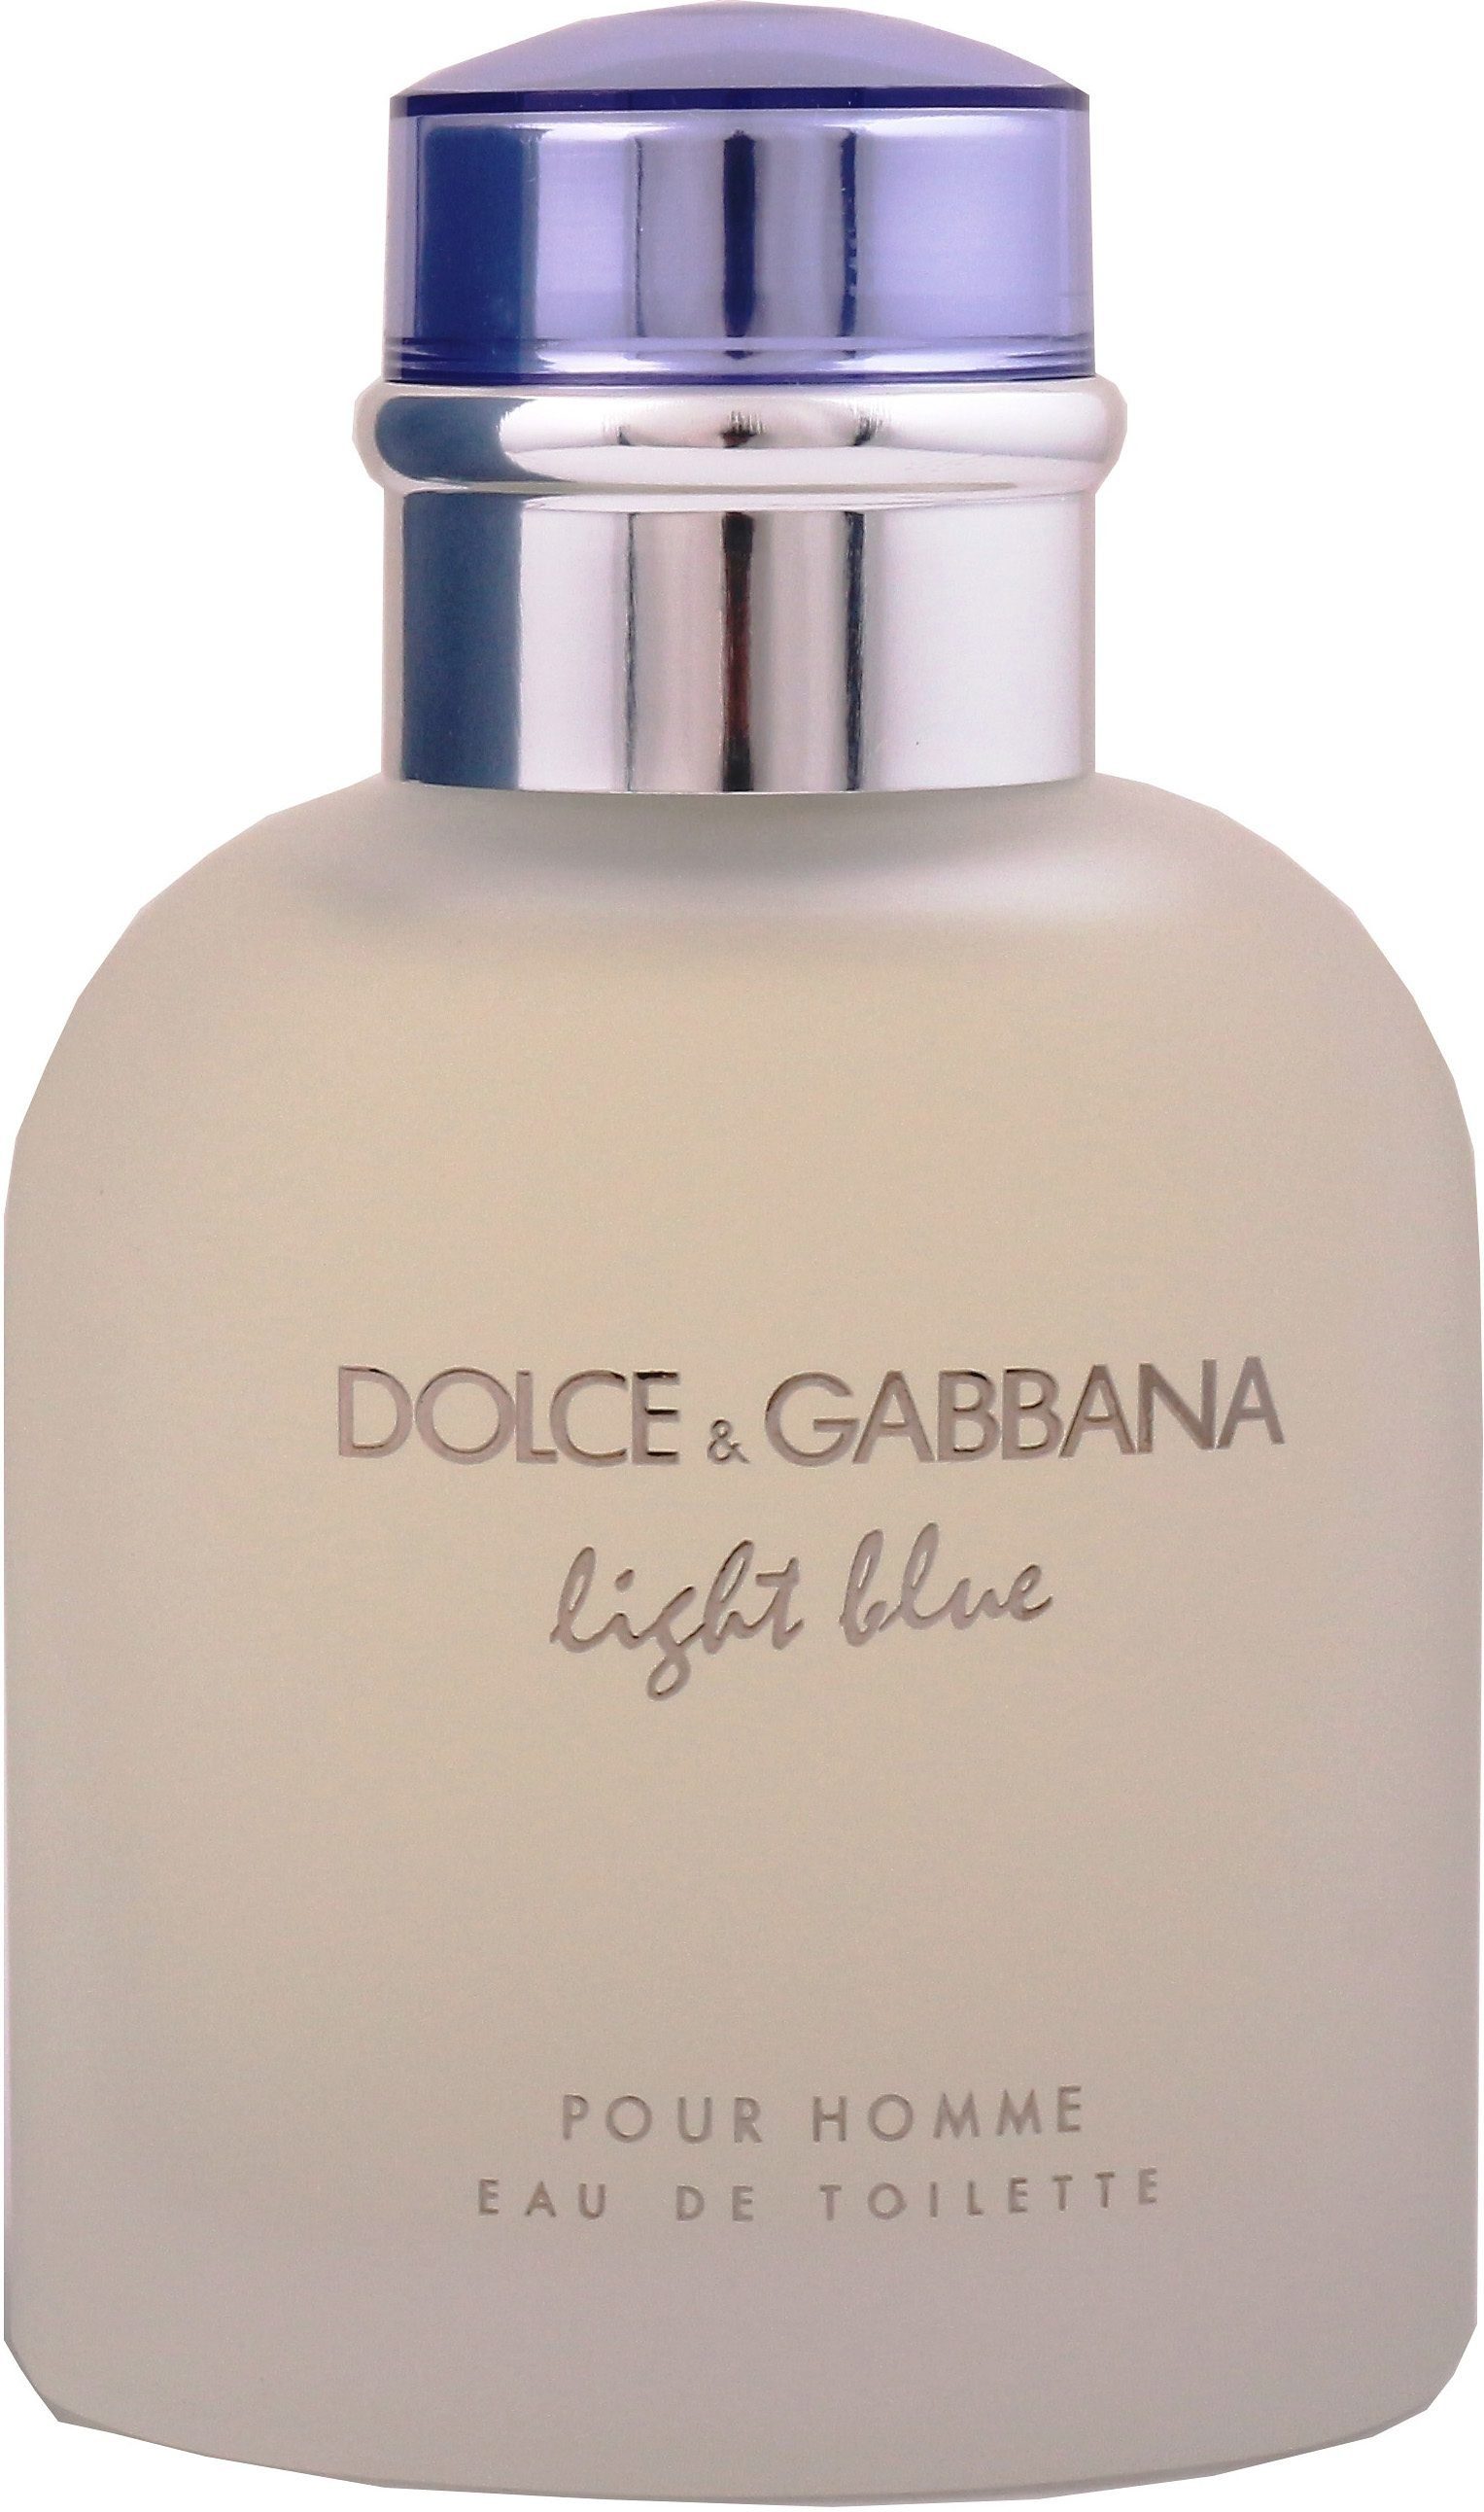 Homme, & Toilette GABBANA Blue Pour him Eau für DOLCE EdT Light Parfum, Männer, de for